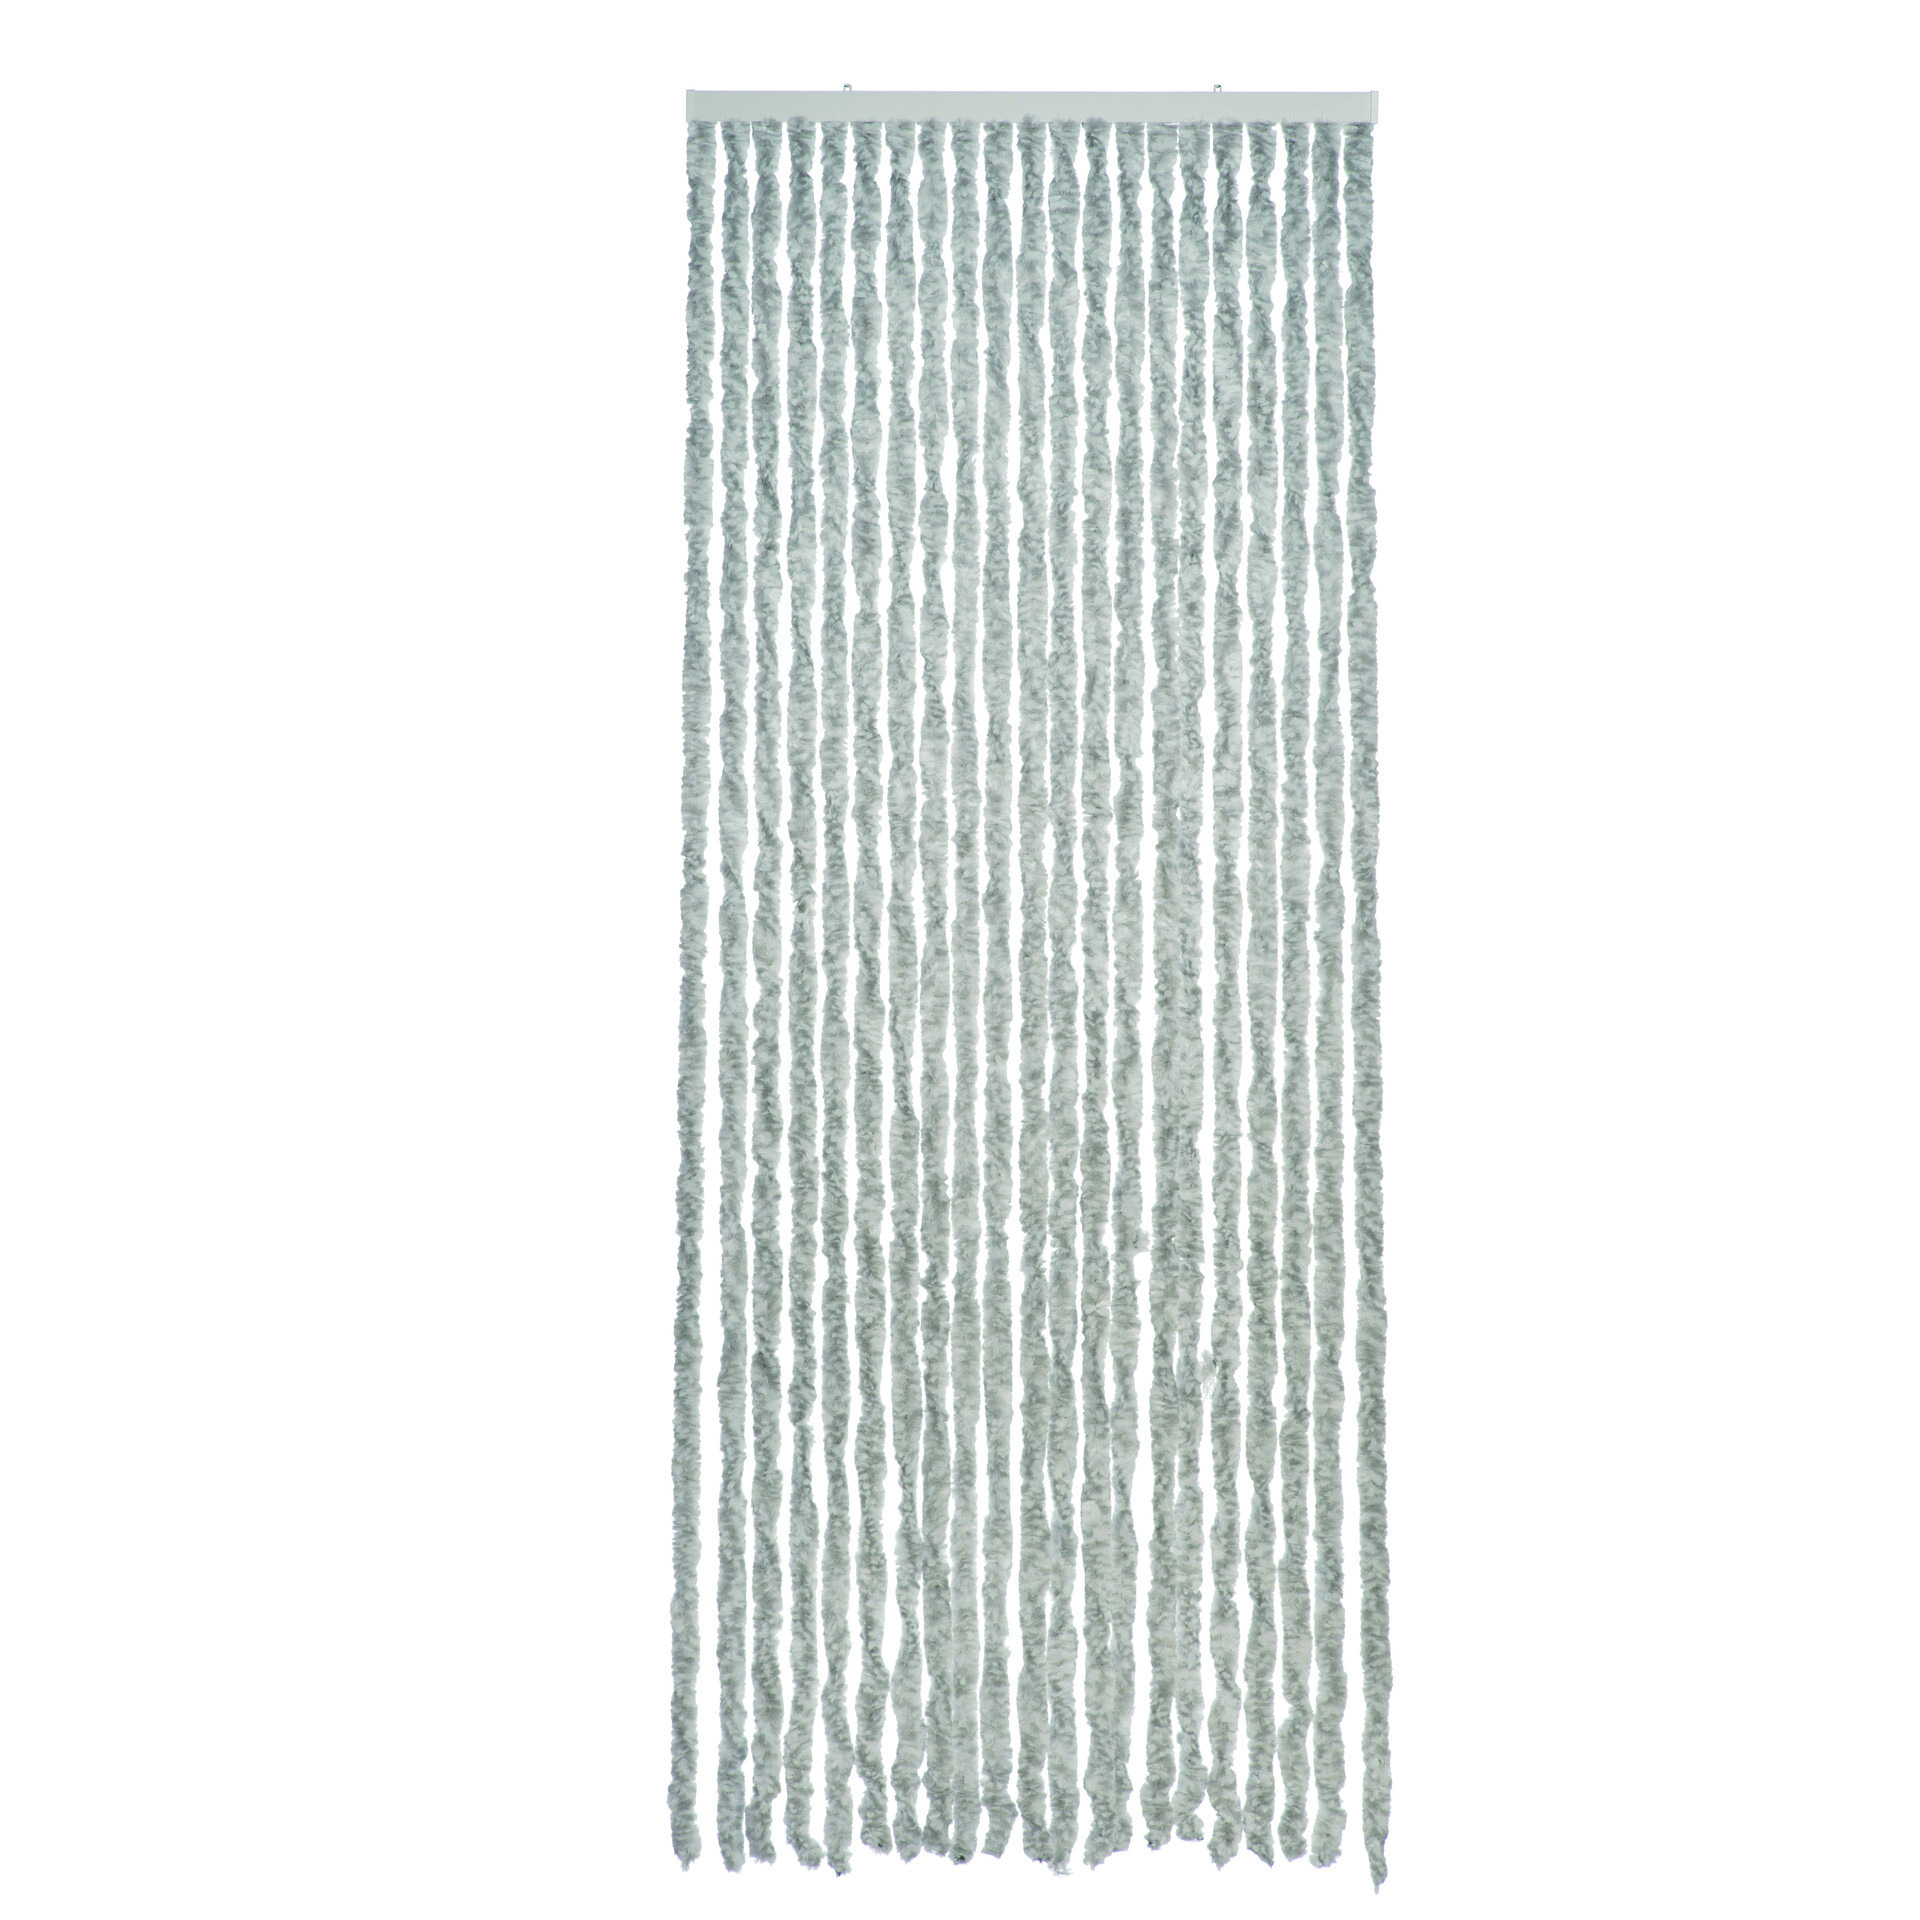 Lichtgrijs polyester stroken vliegen-insecten gordijn 93 x 230 cm